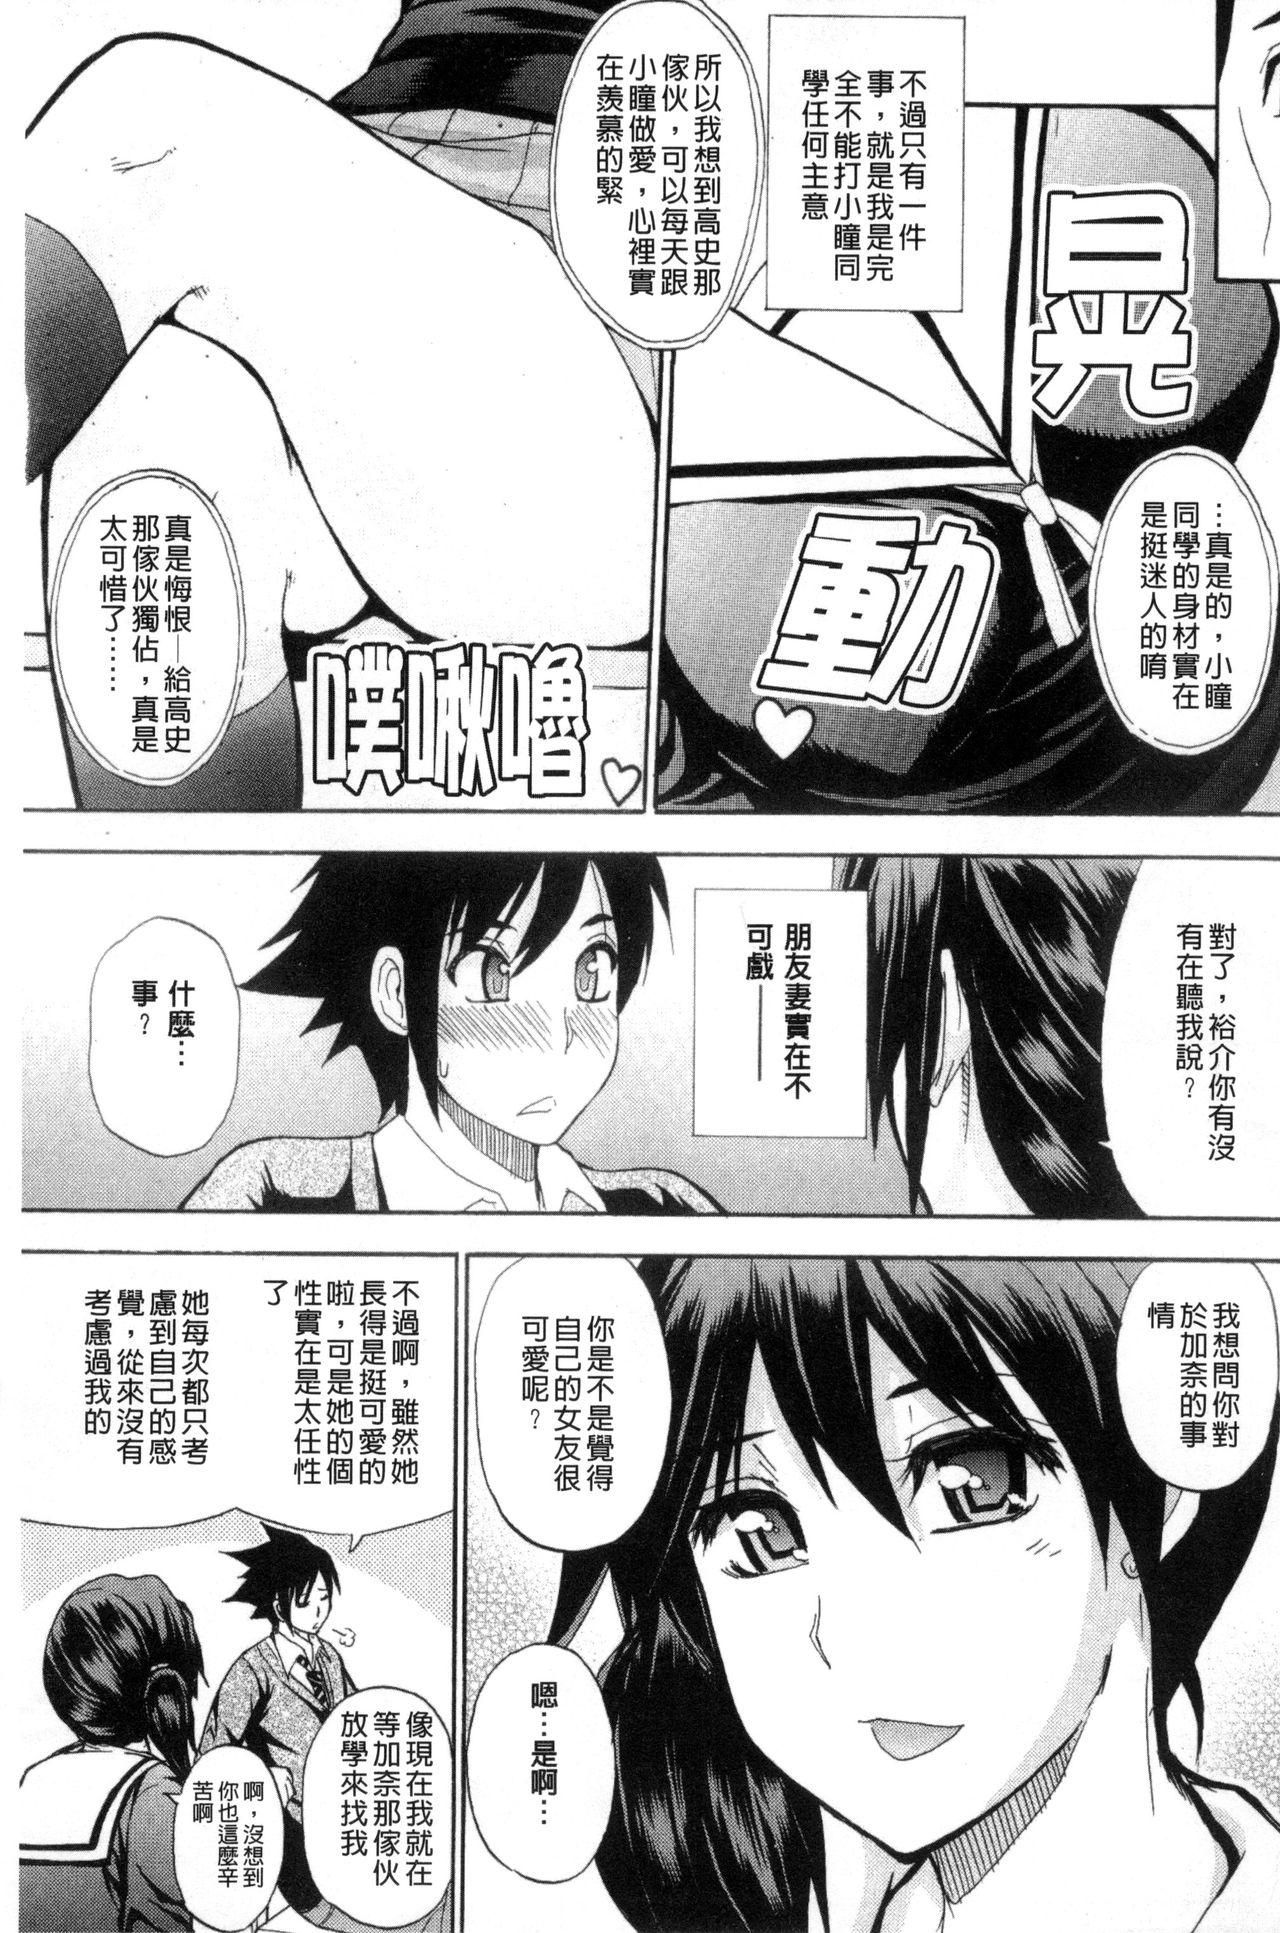 Public Sex Watashi no Shitai ○○na Koto | 我所想做的○○行為 Village - Page 6